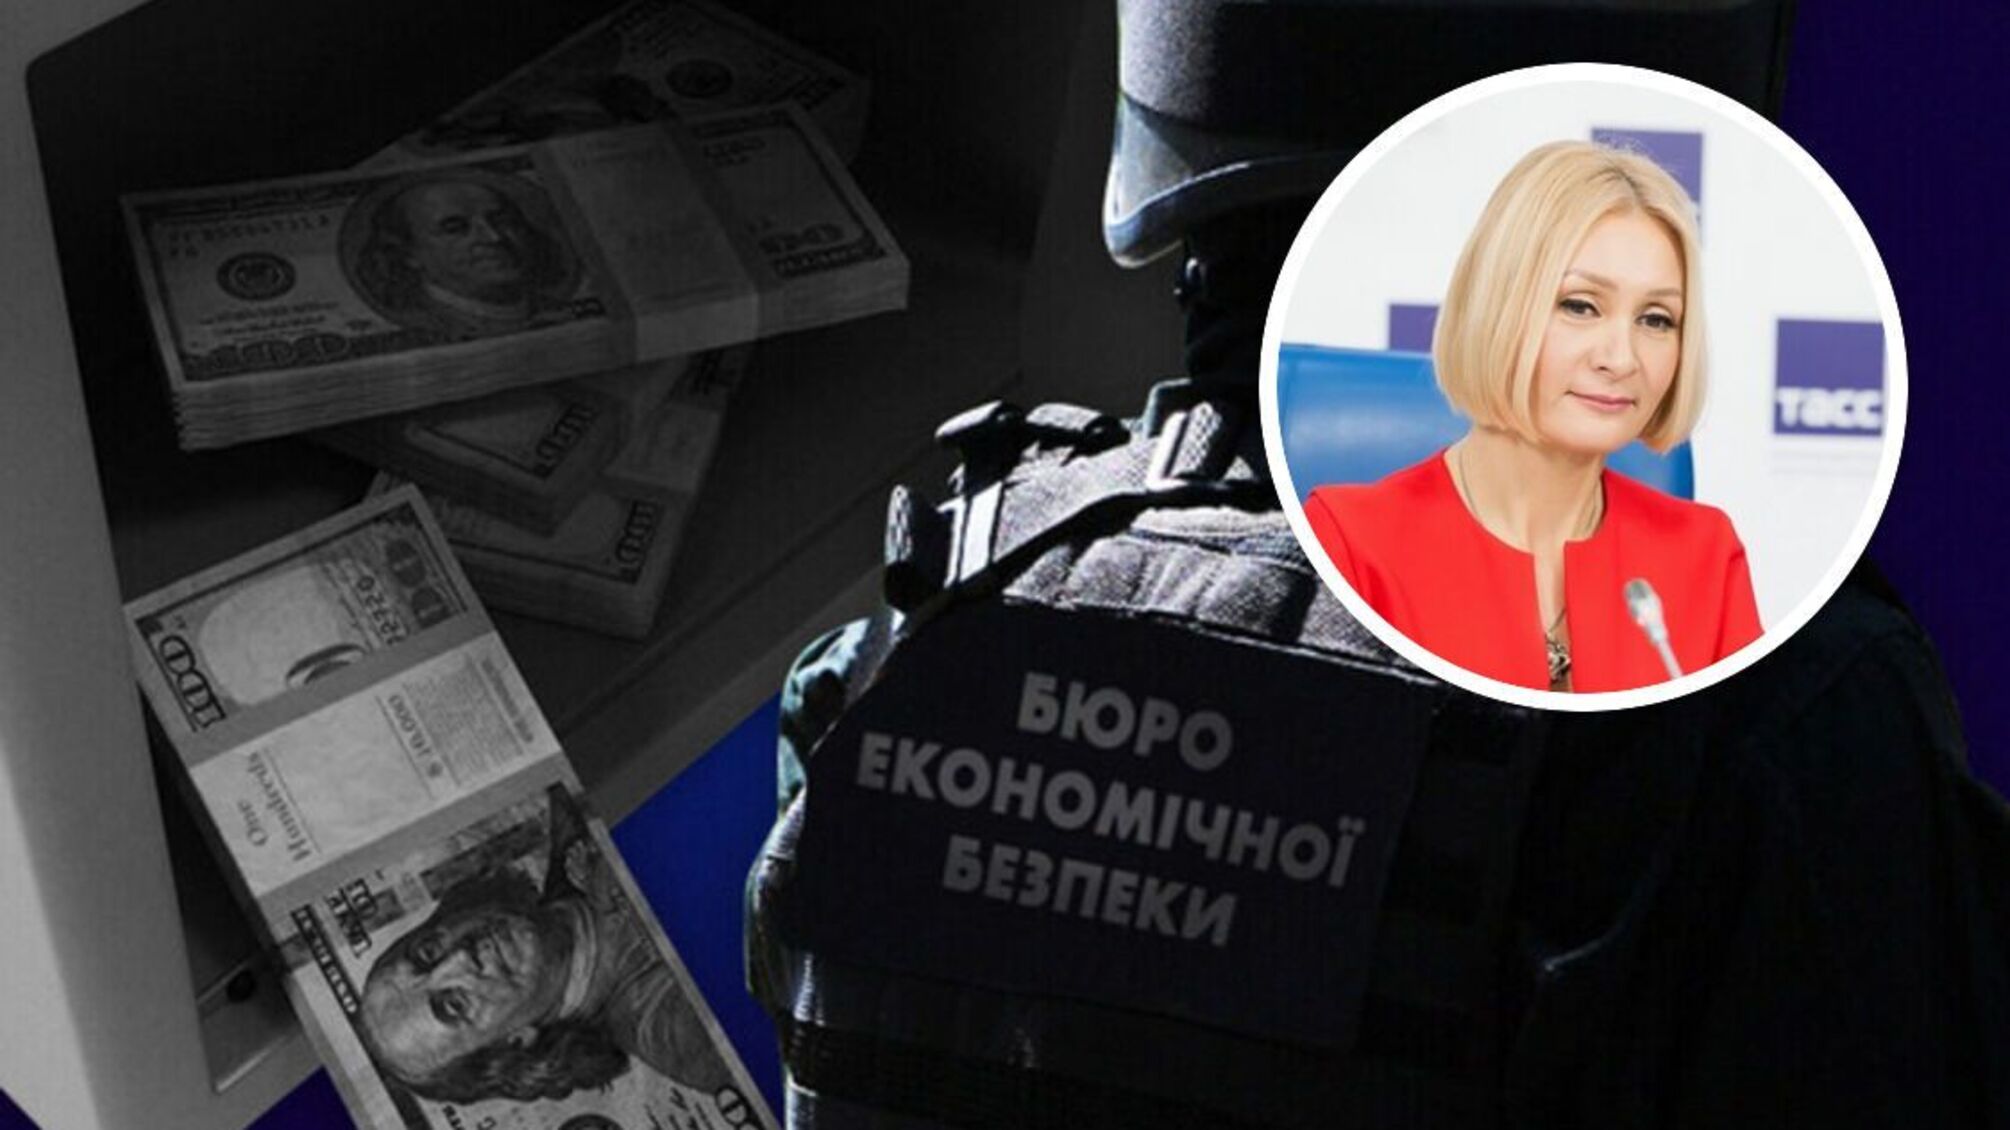 БЕБ арештувало активи російської власниці Brocard